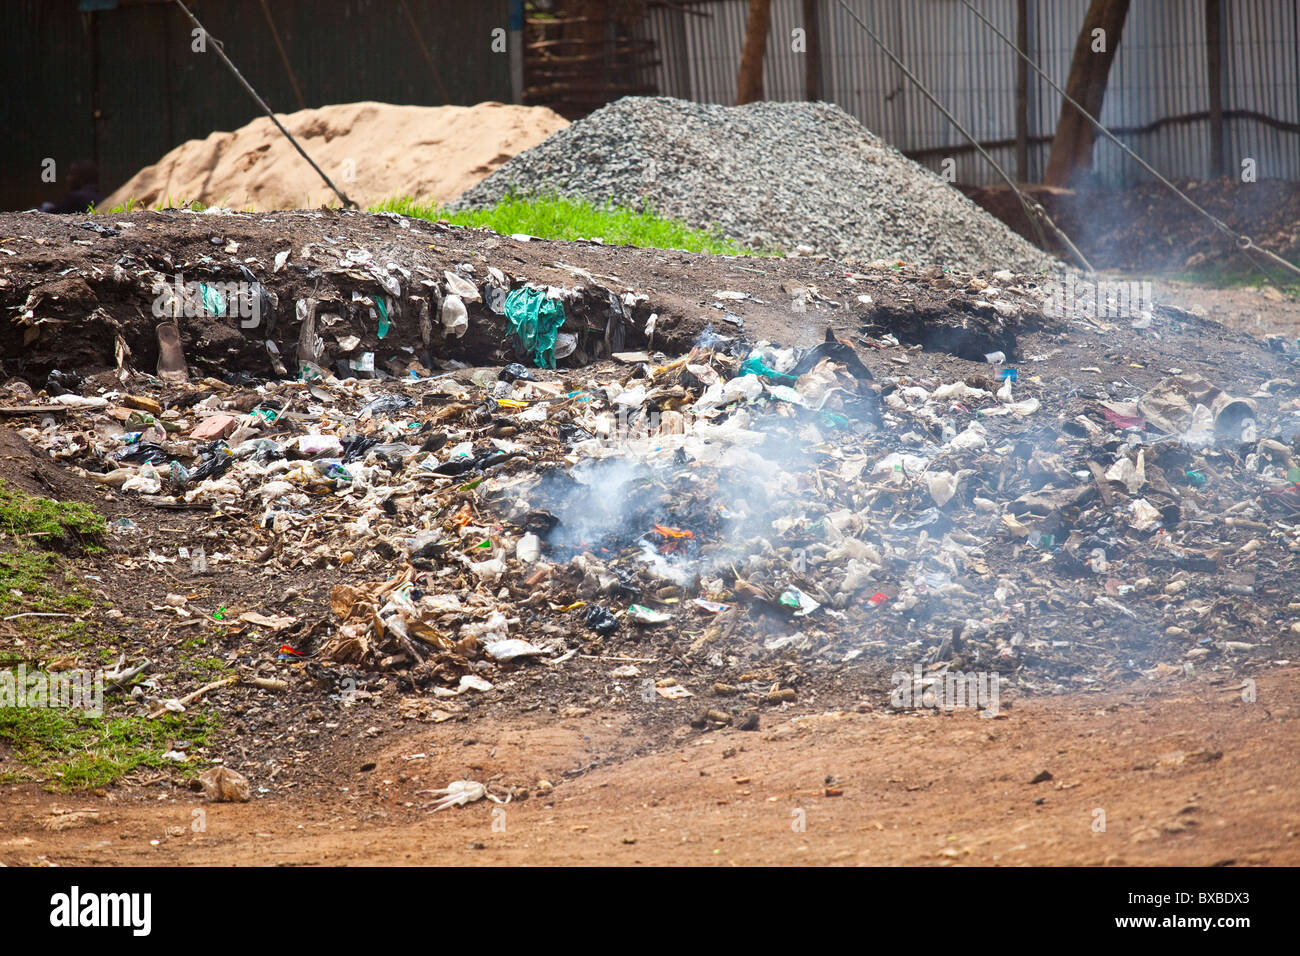 Burning rubbish, Nairobi, Kenya Stock Photo